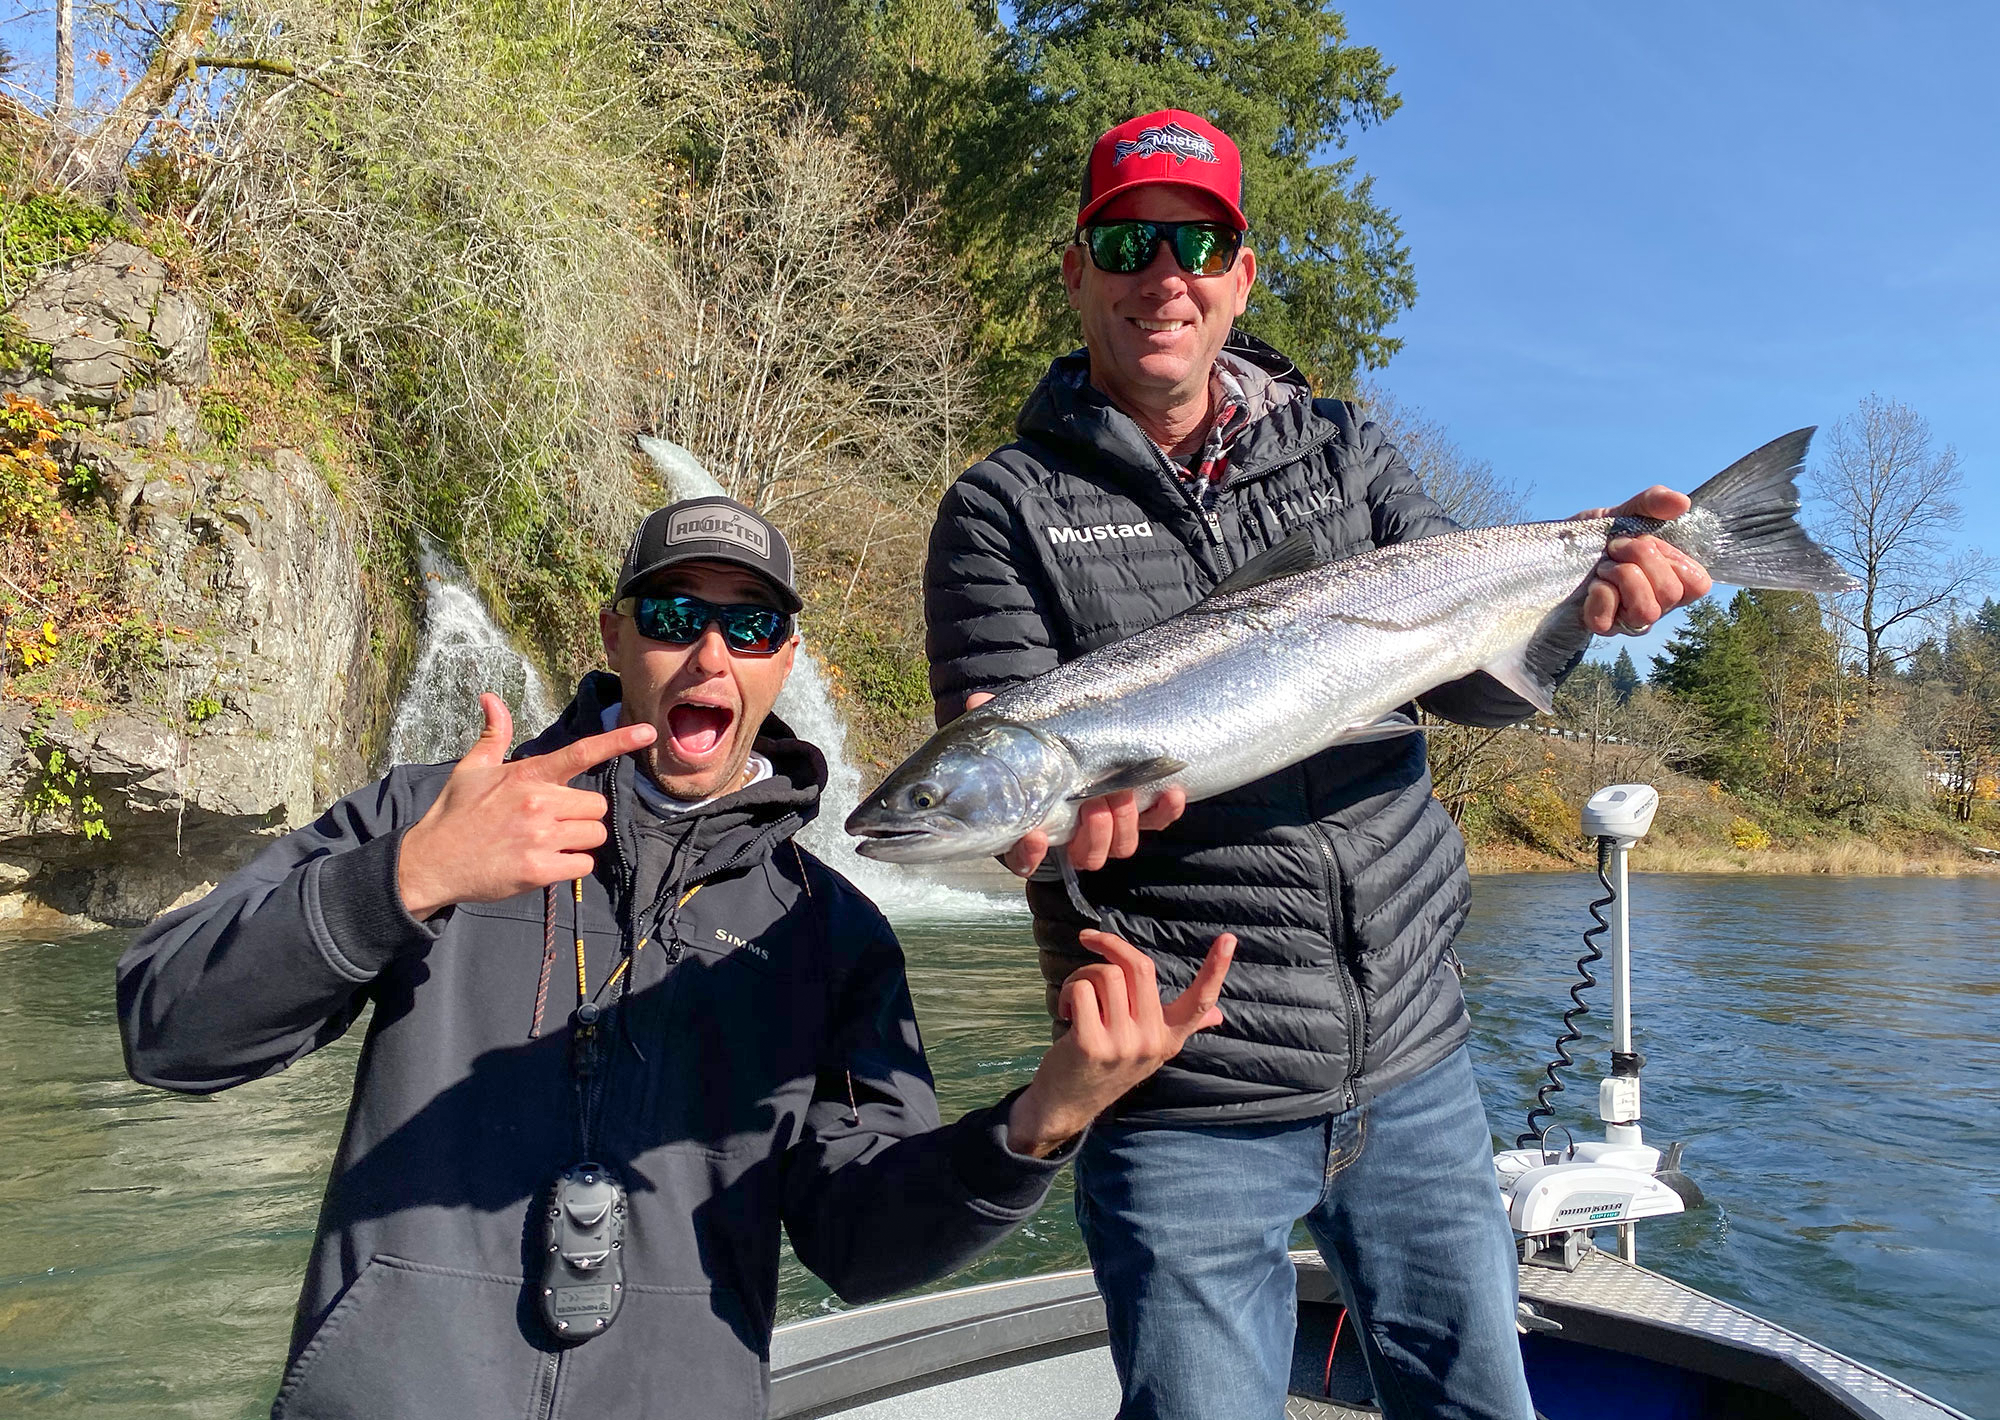 Chum Salmon Fishing 101 – Sea-Run Fly & Tackle